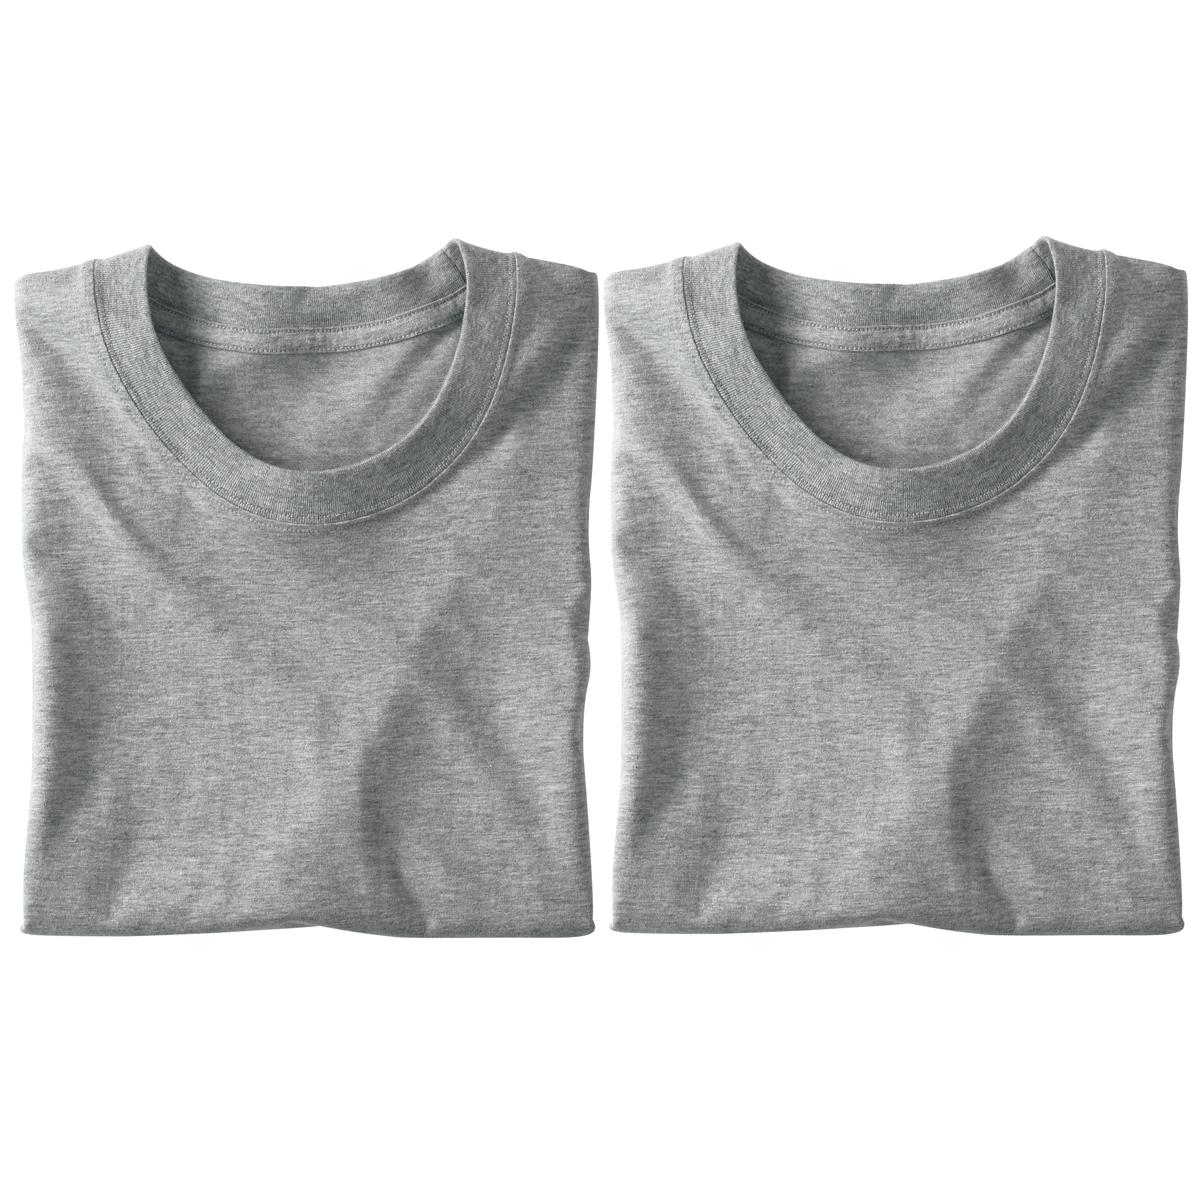 同色2枚組 綿100%クルーネックTシャツ/肌触りさらり(半袖) ファッション通販ならセシール(cecile)